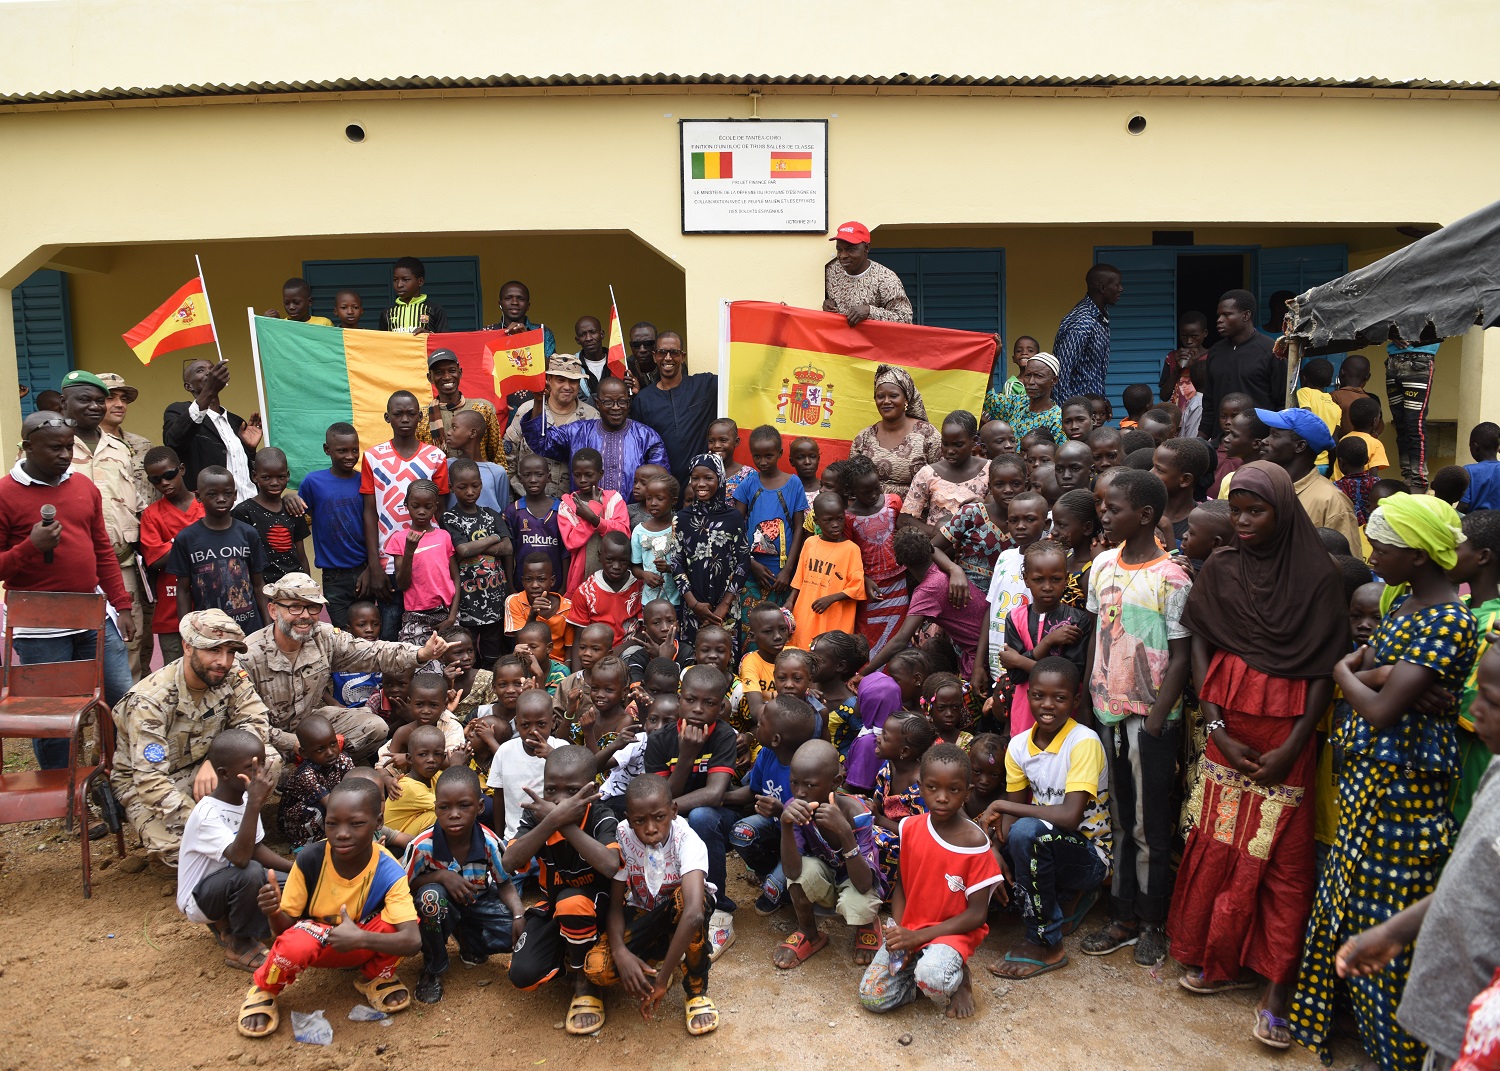 Los militares españoles en Mali apoyan la educación como herramienta de desarrollo